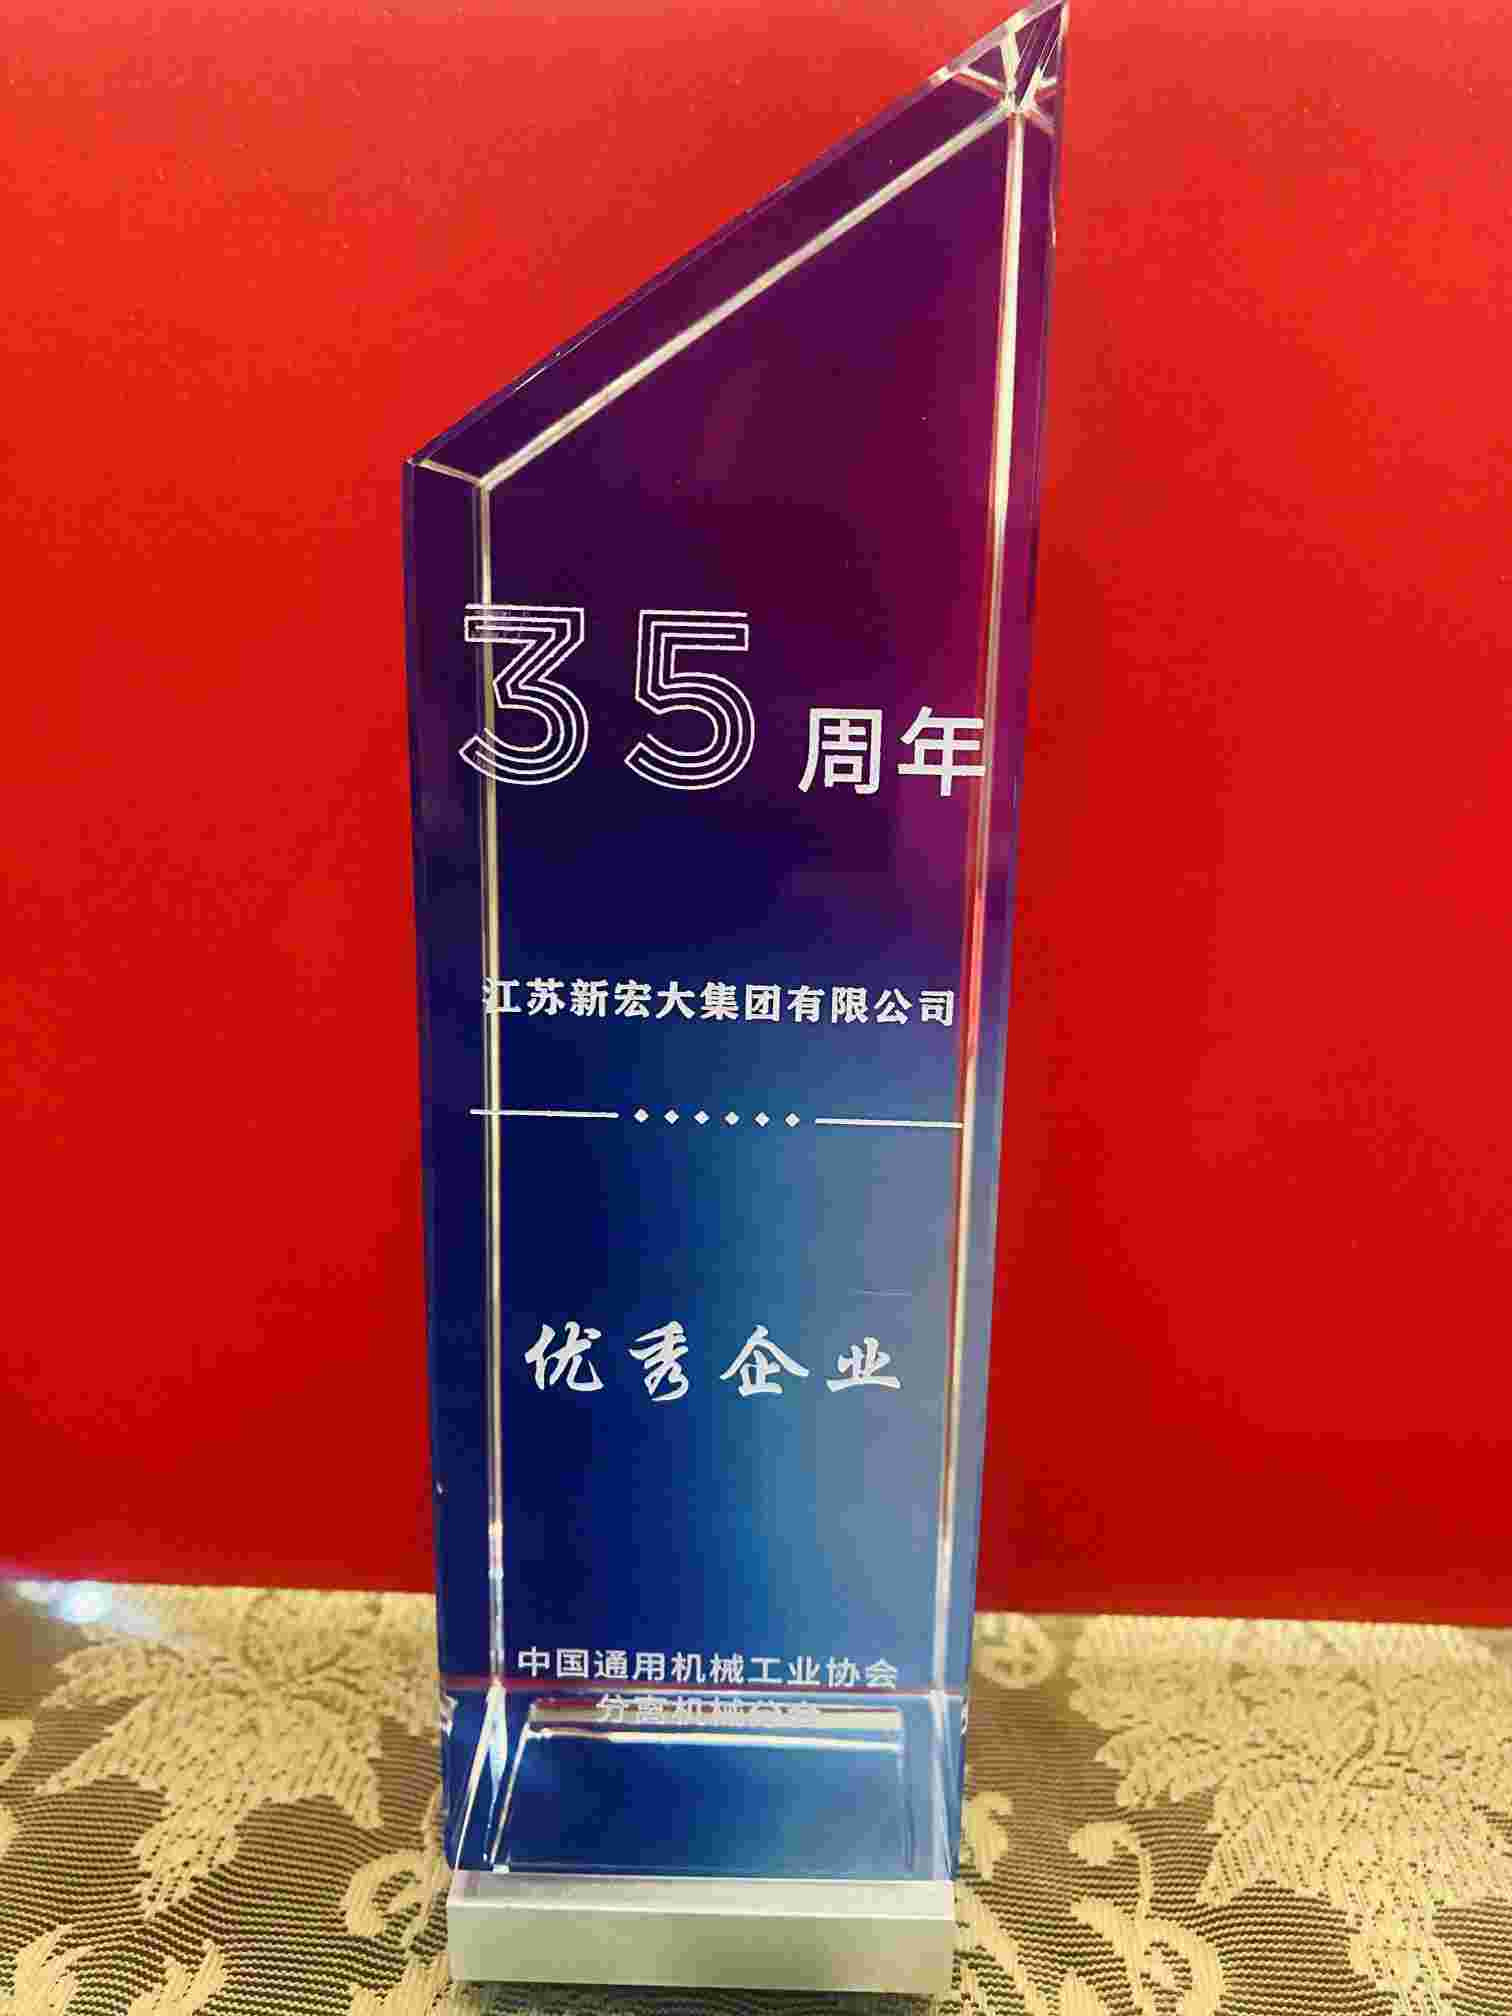 热烈祝贺江苏新宏大集团有限公司斩获技术创新与优秀企业两项大奖